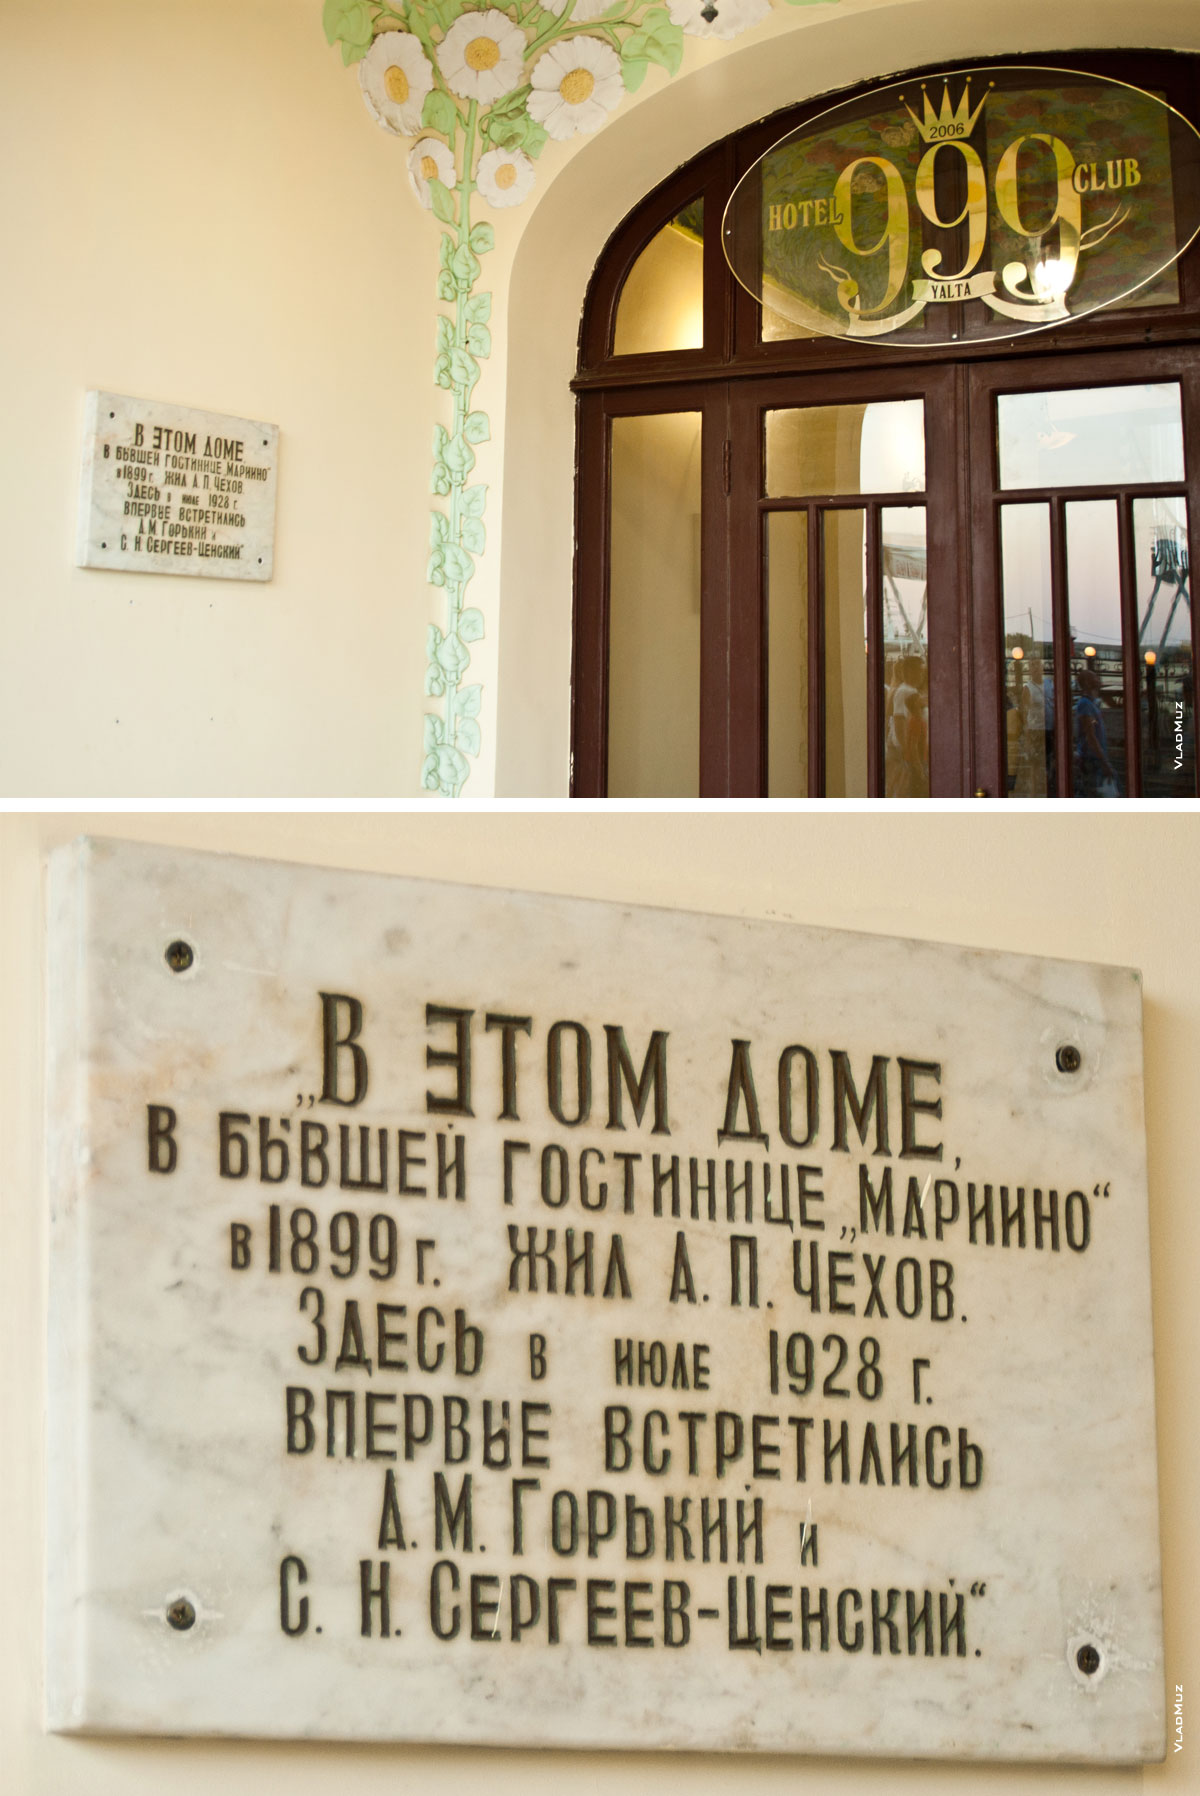 Фото таблички на доме в Ялте, где жил Чехов и где встретились Горький и Сергеев-Ценский